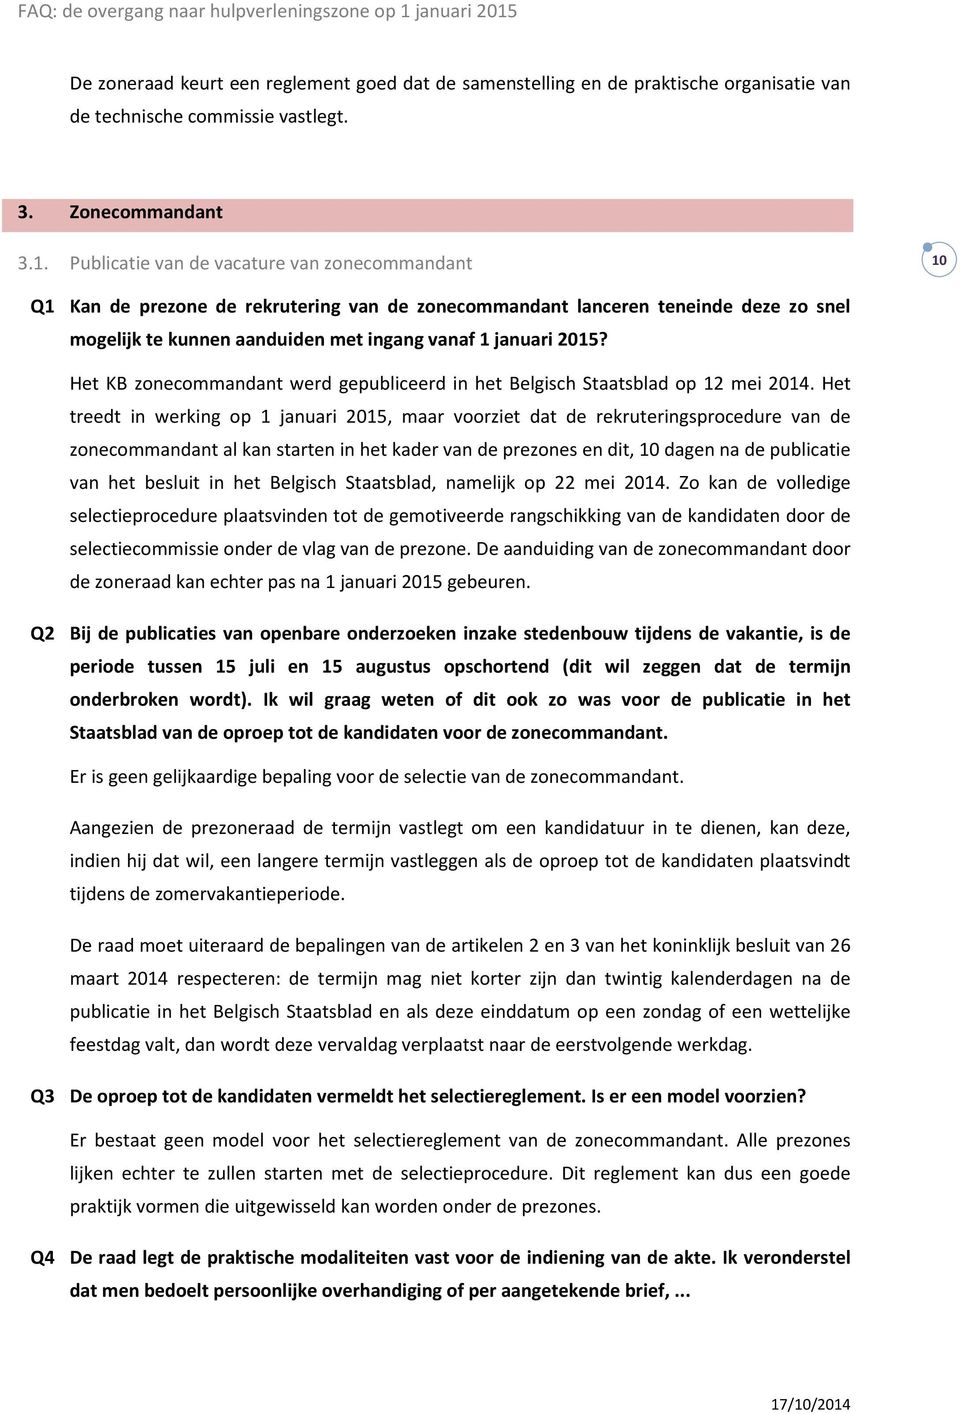 Het KB zonecommandant werd gepubliceerd in het Belgisch Staatsblad op 12 mei 2014.